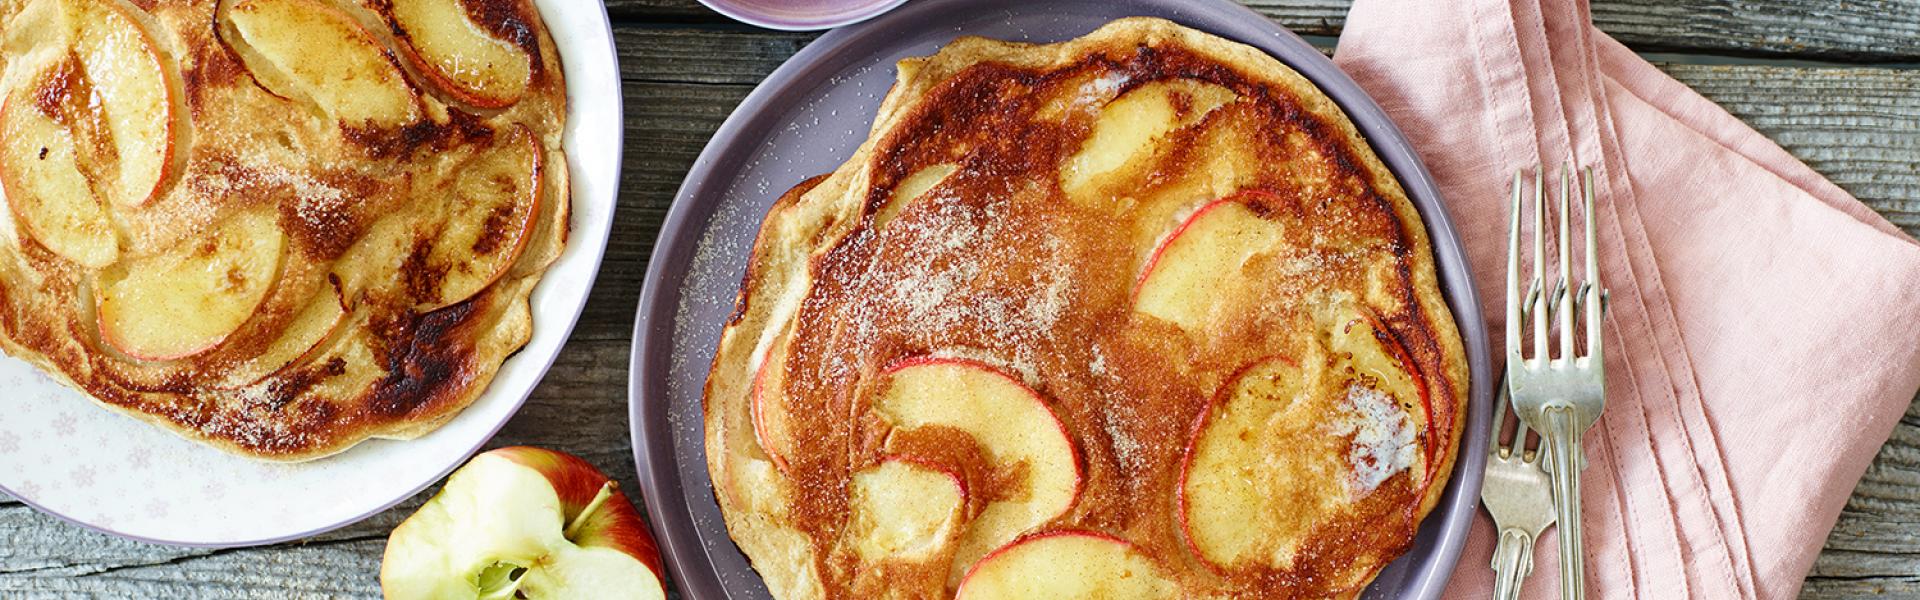 Apfelpfannkuchen klassisch wie von Oma | Simply Yummy